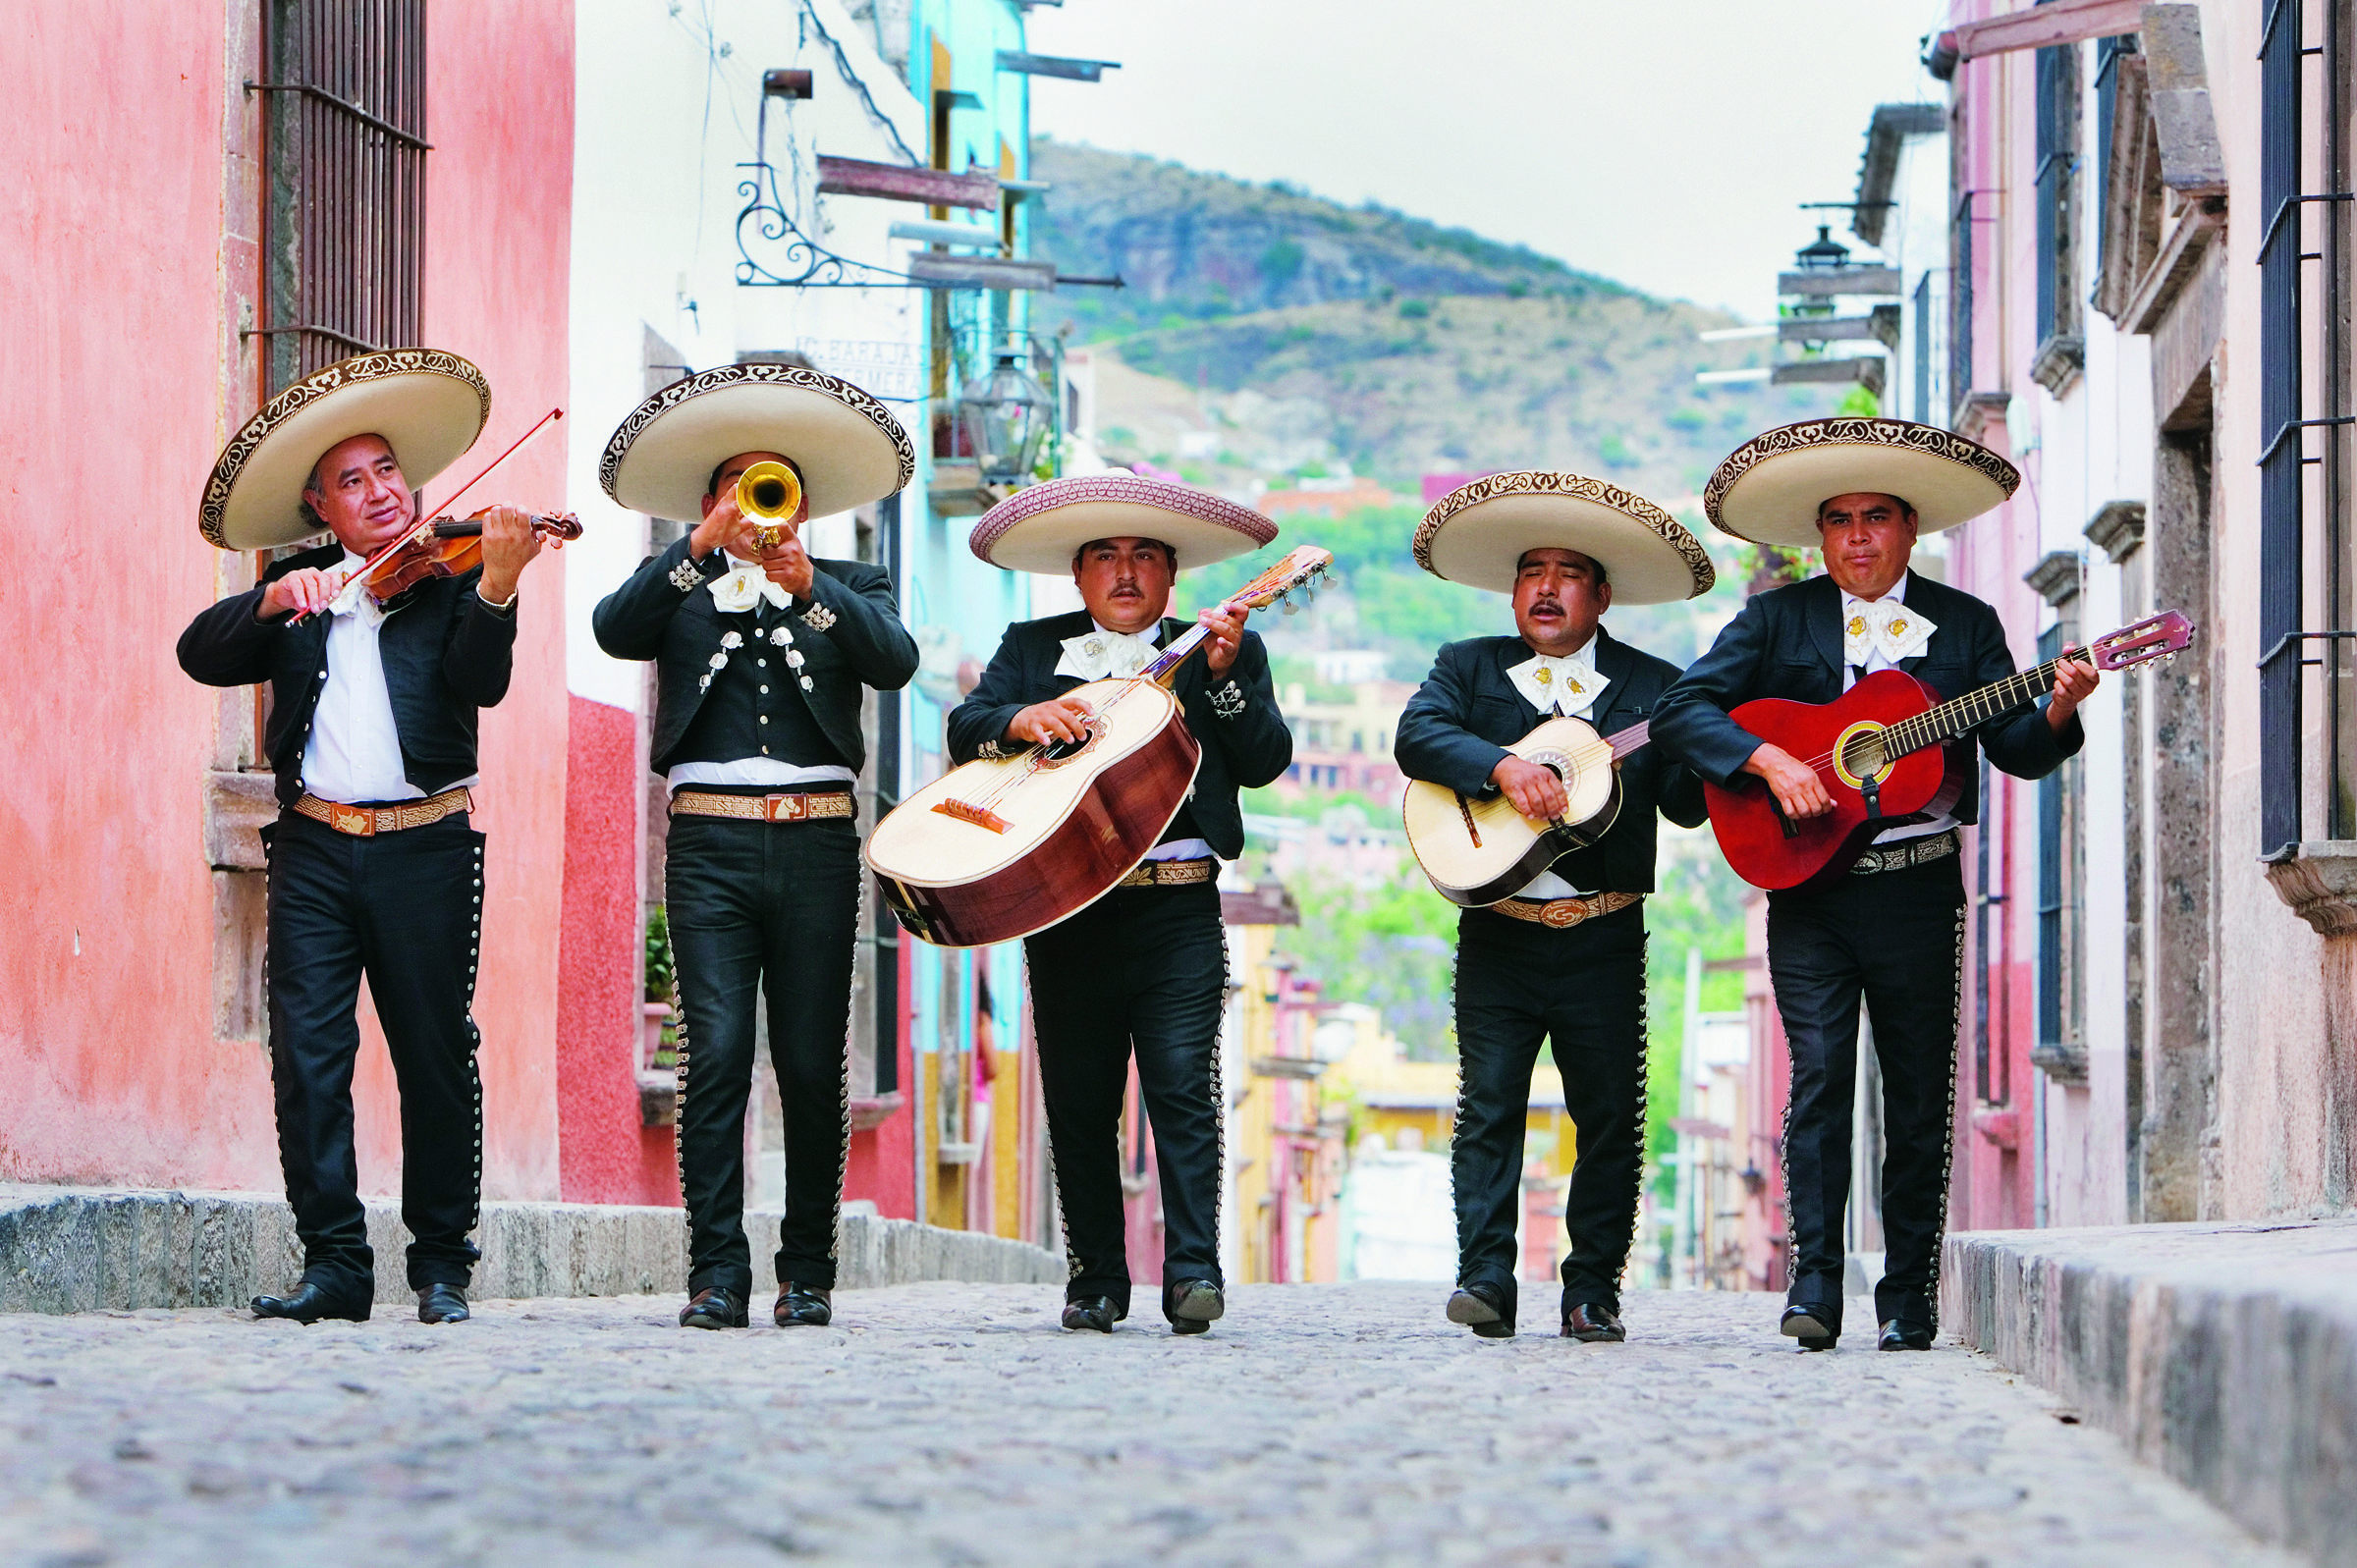 El Mariachi símbolo cultural y artístico que engrandece a México